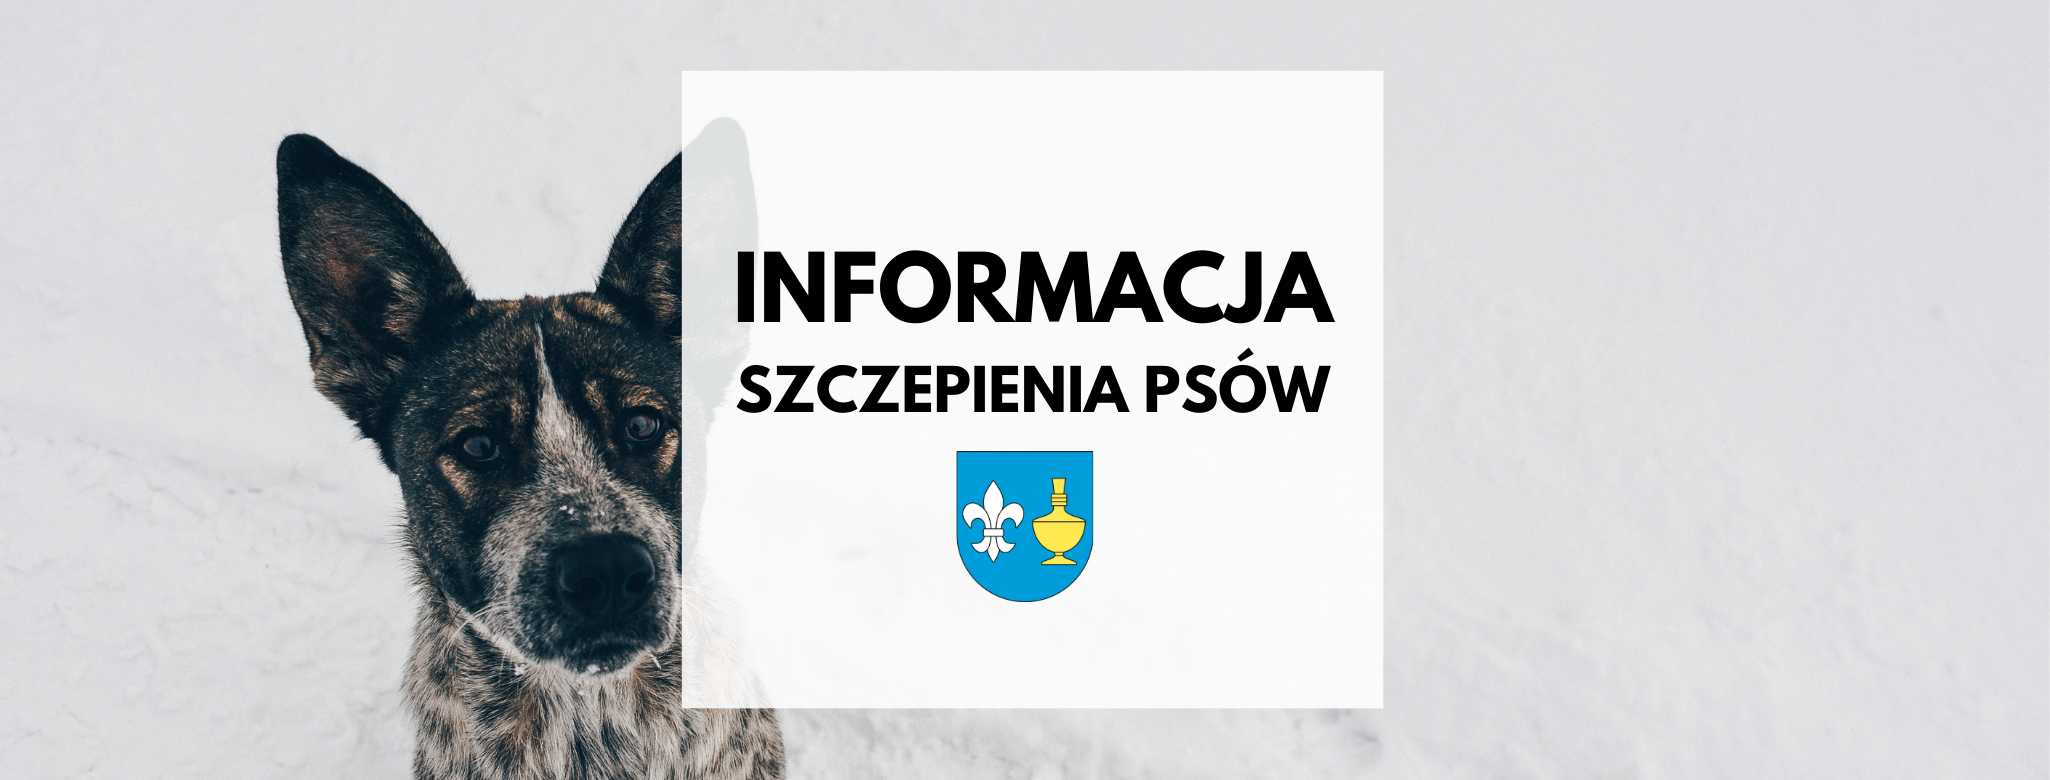 nagłówek graficzny o treści: informacja, szczepienia psów